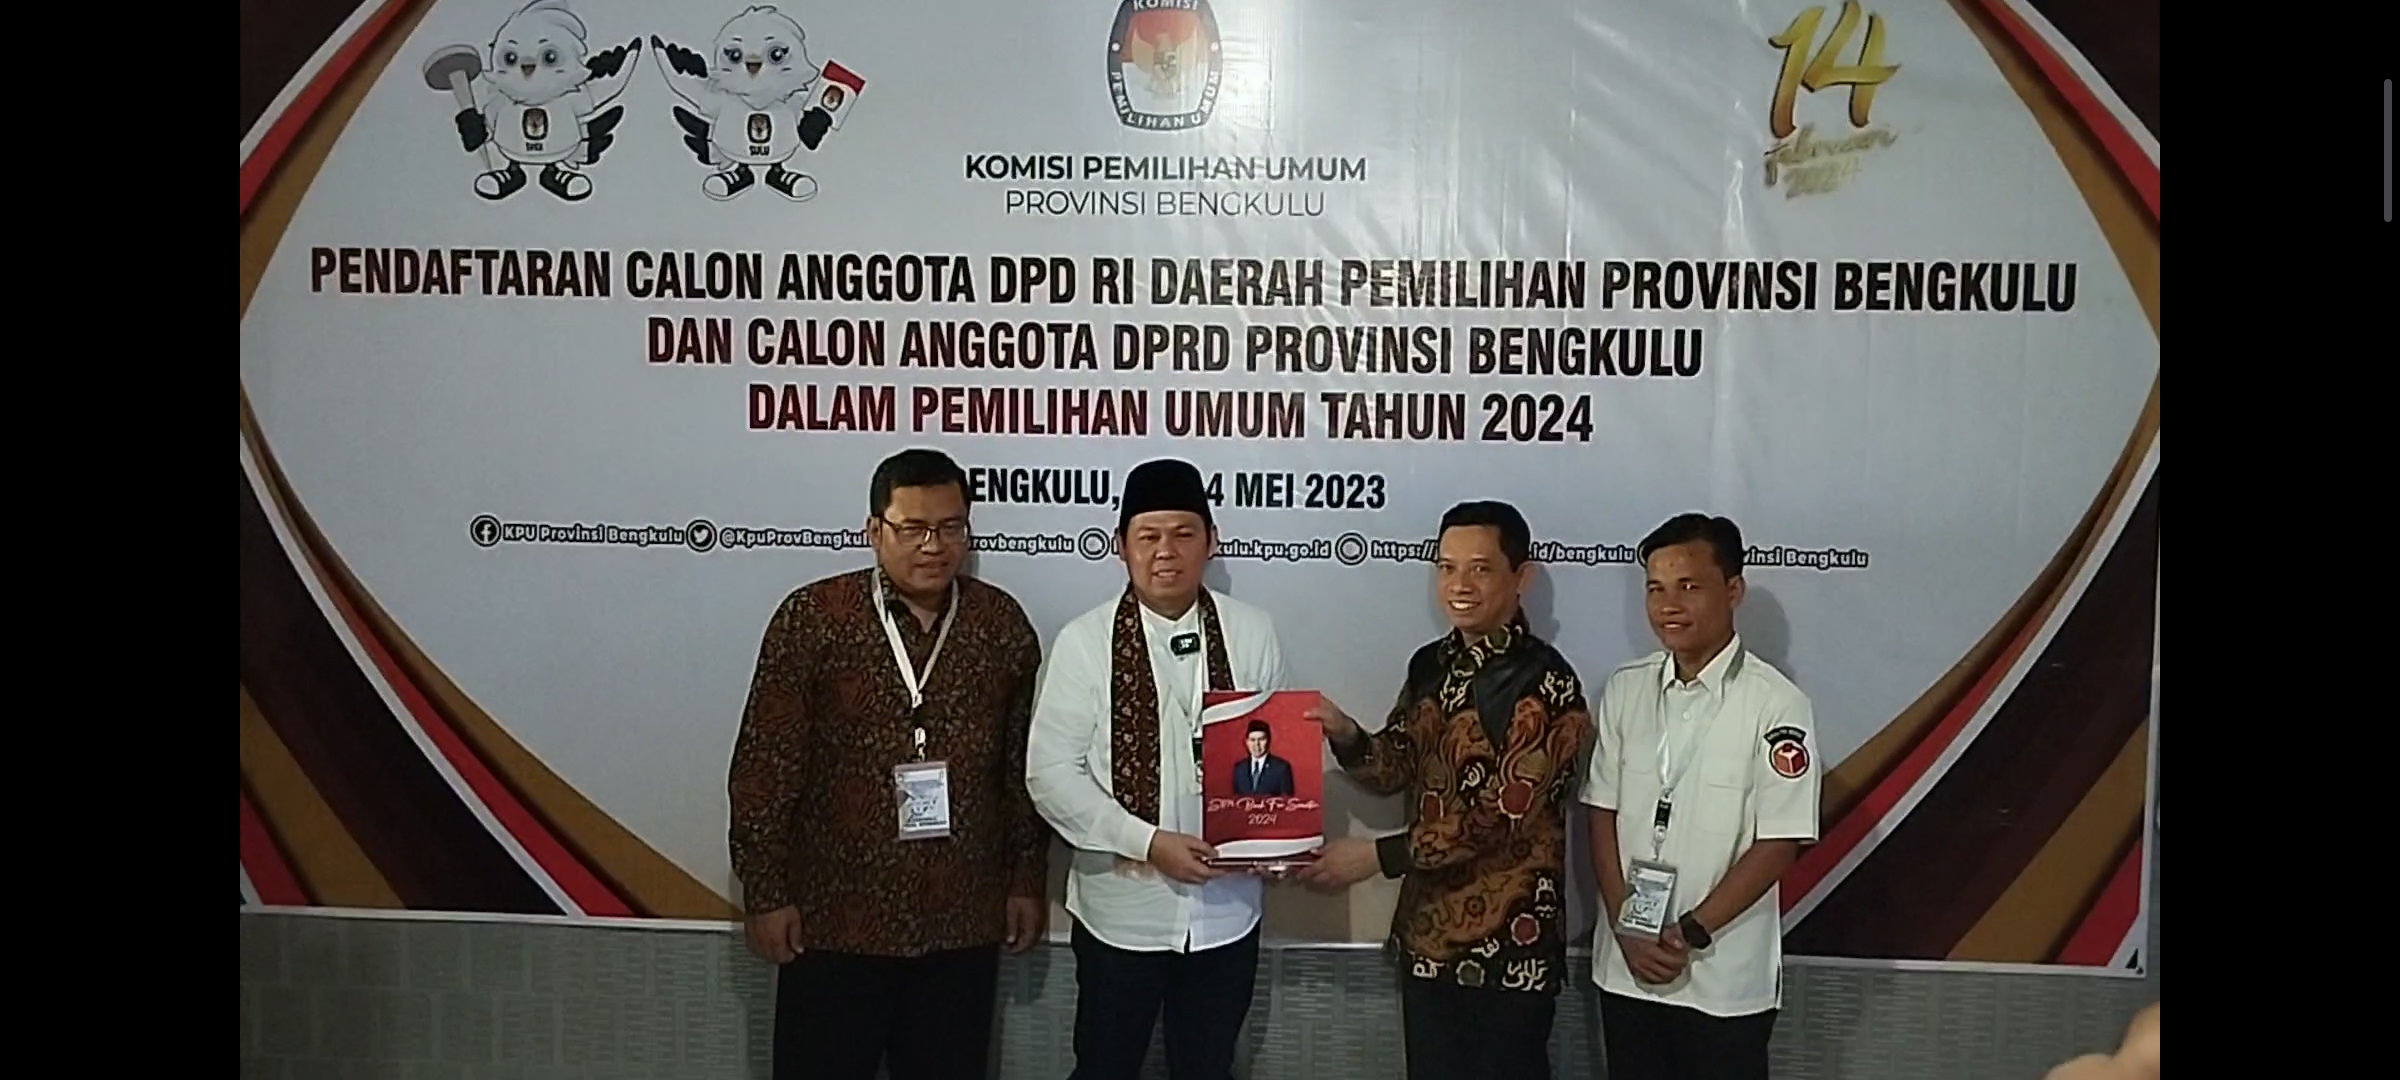 Penyerahan Berkas Pendaftaran ke KPU Provinsi Bengkulu